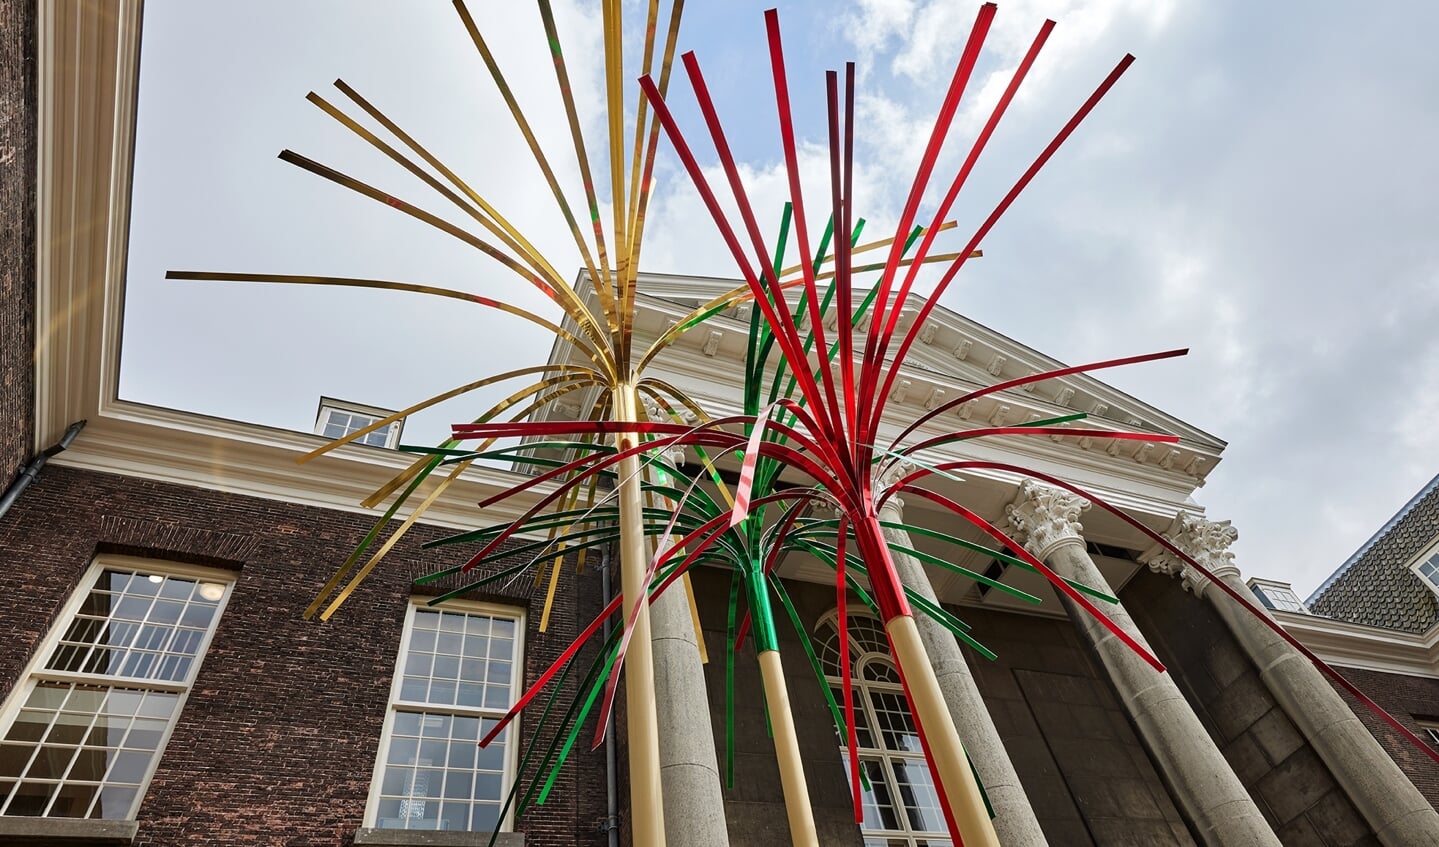 Drie meterhoge prikkers van kunstenaar Onno Poiesz op het plein van het Stedelijk museum Schiedam.